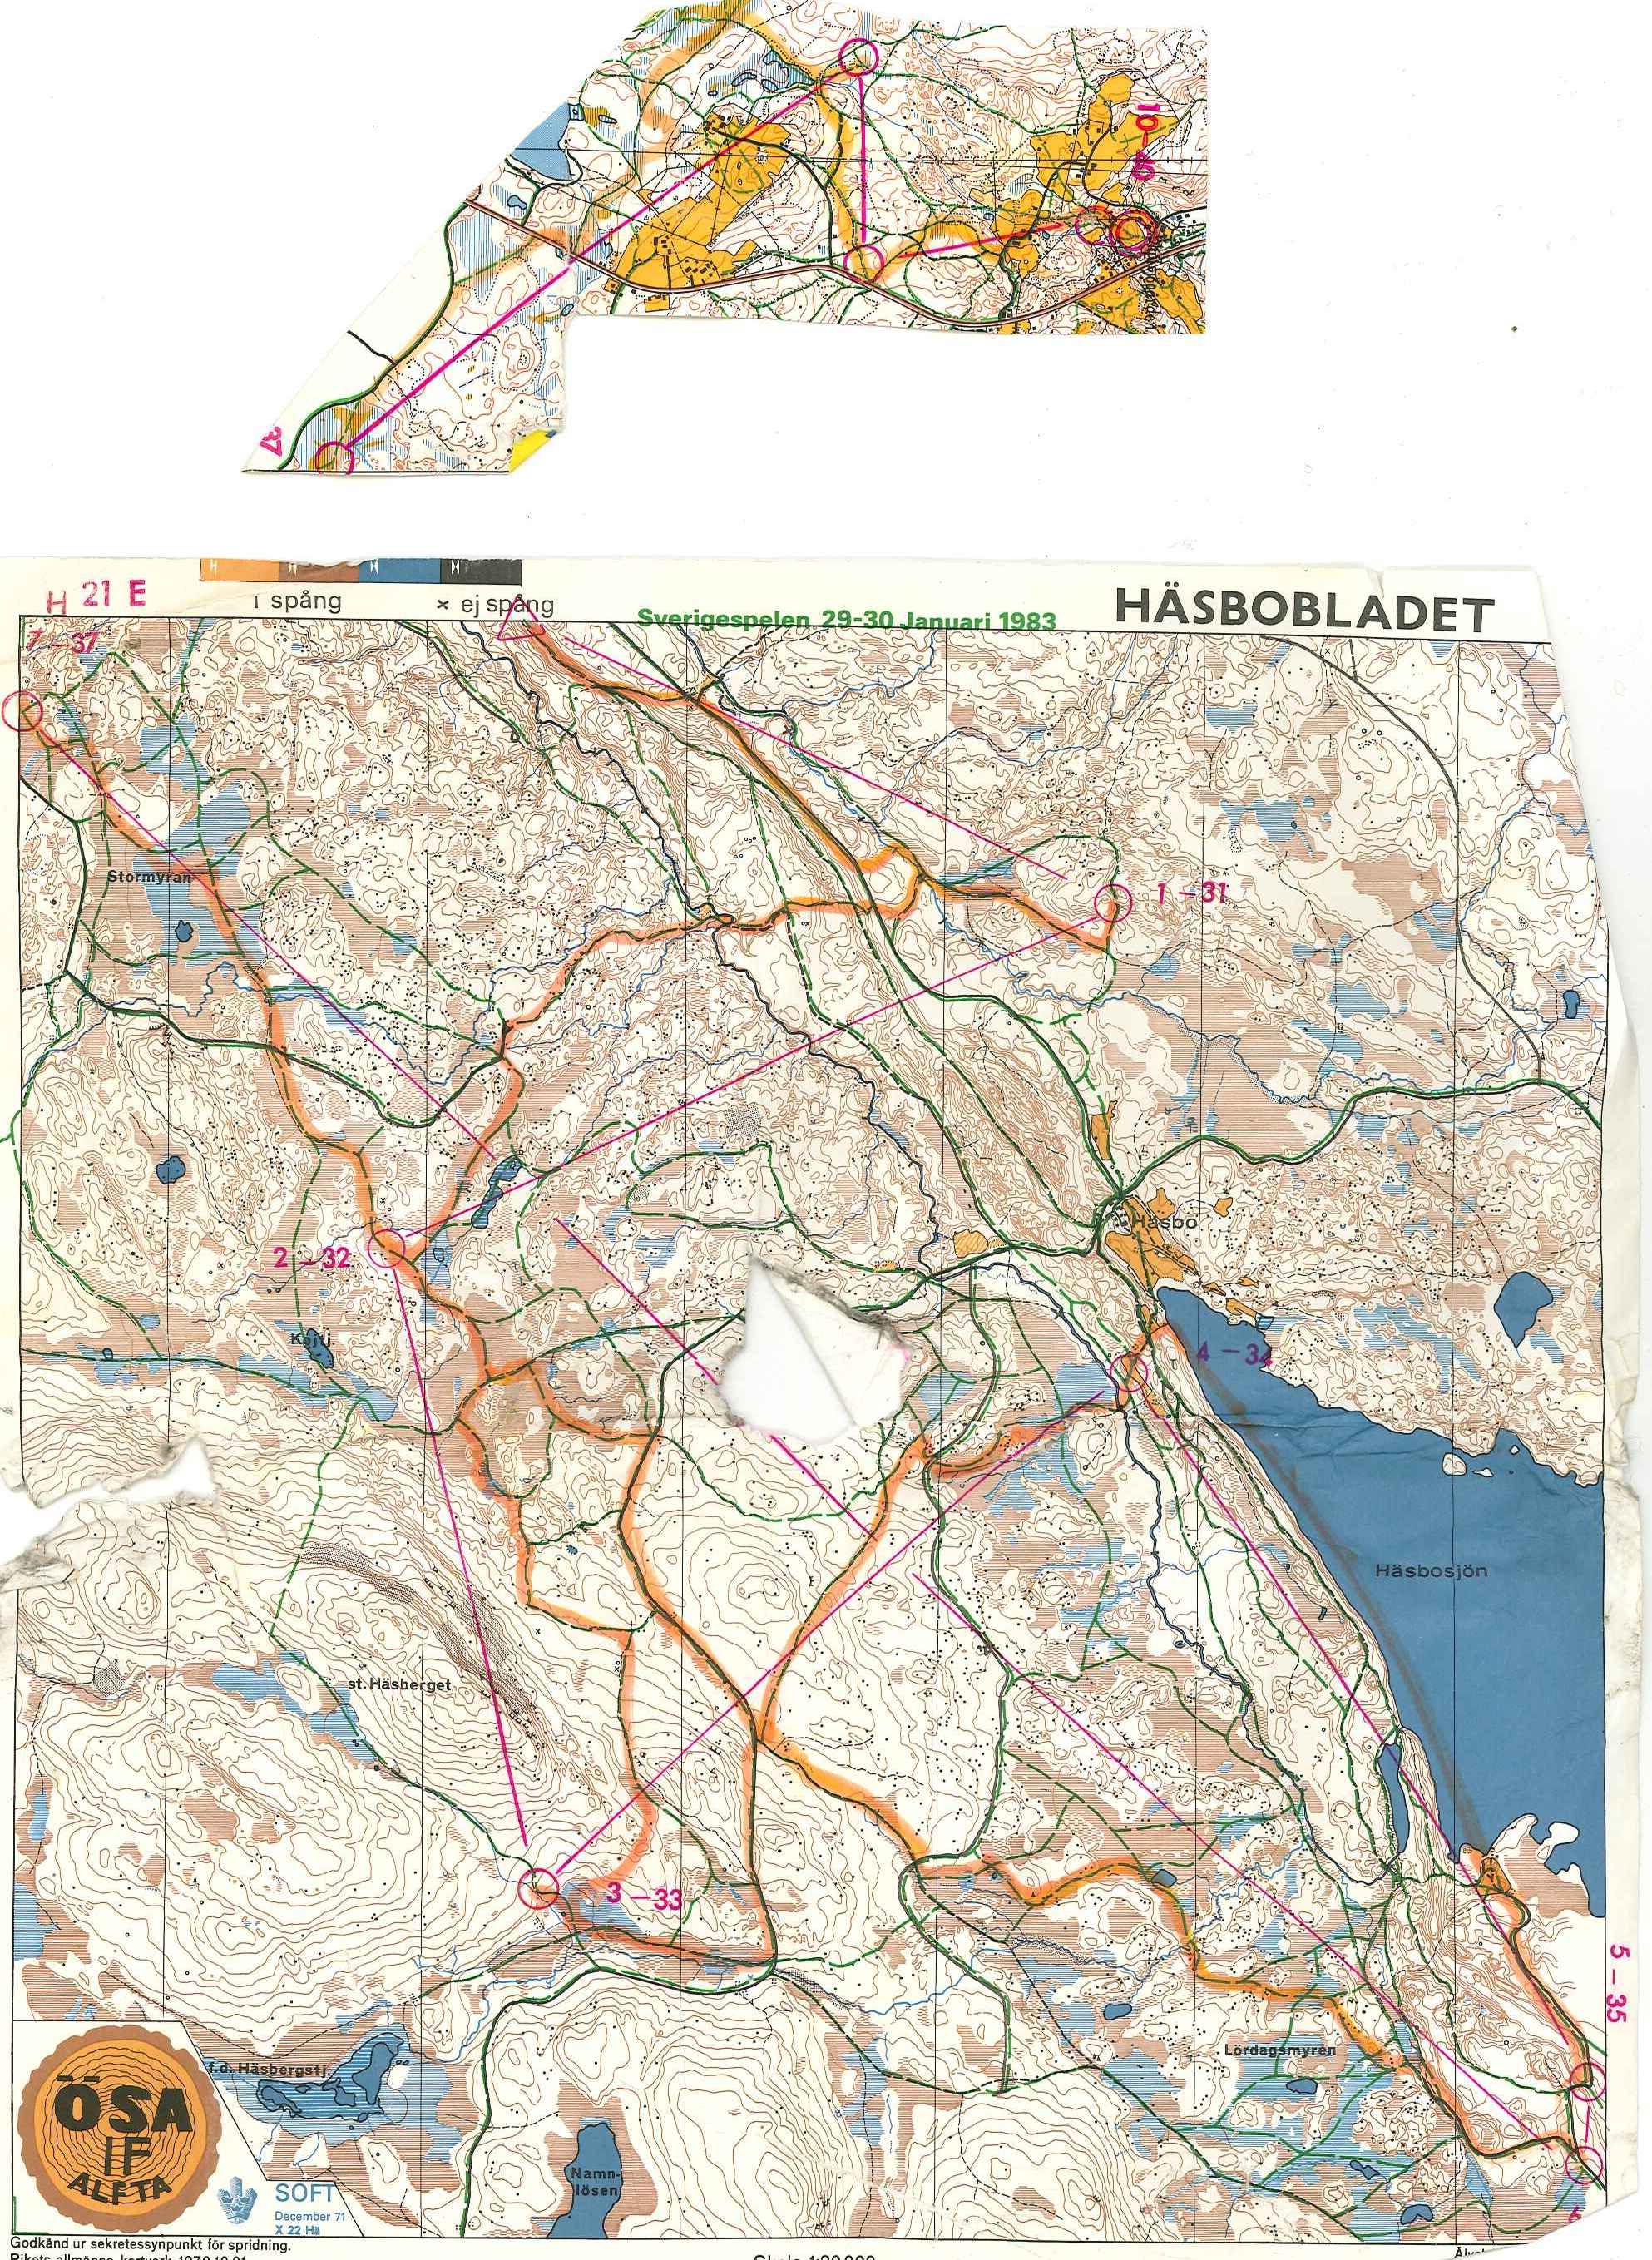 Sverigespelen skidO (29-01-1983)